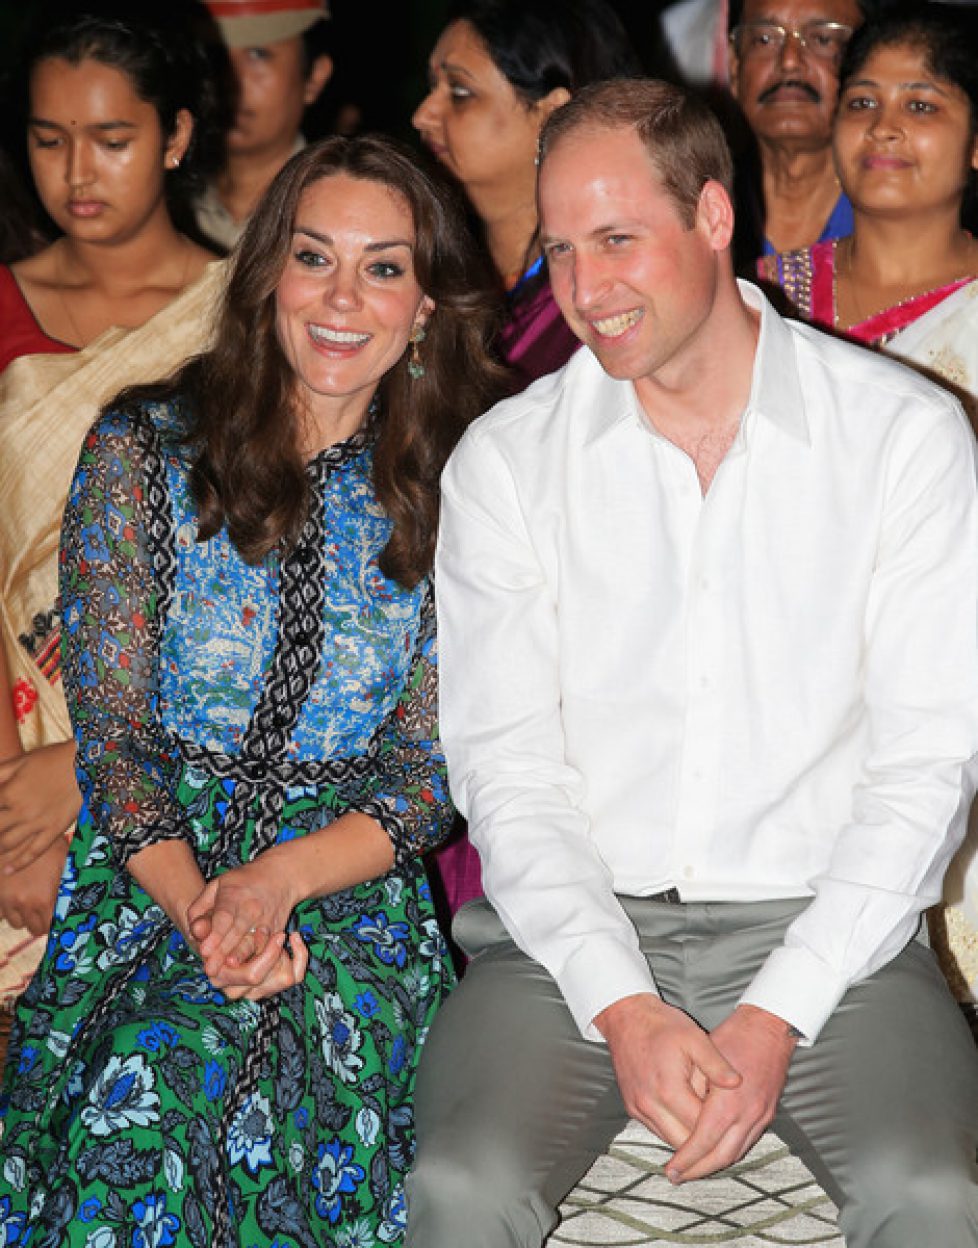 Duke+Duchess+Cambridge+Visit+India+Bhutan+6F-SvwIv7VPl